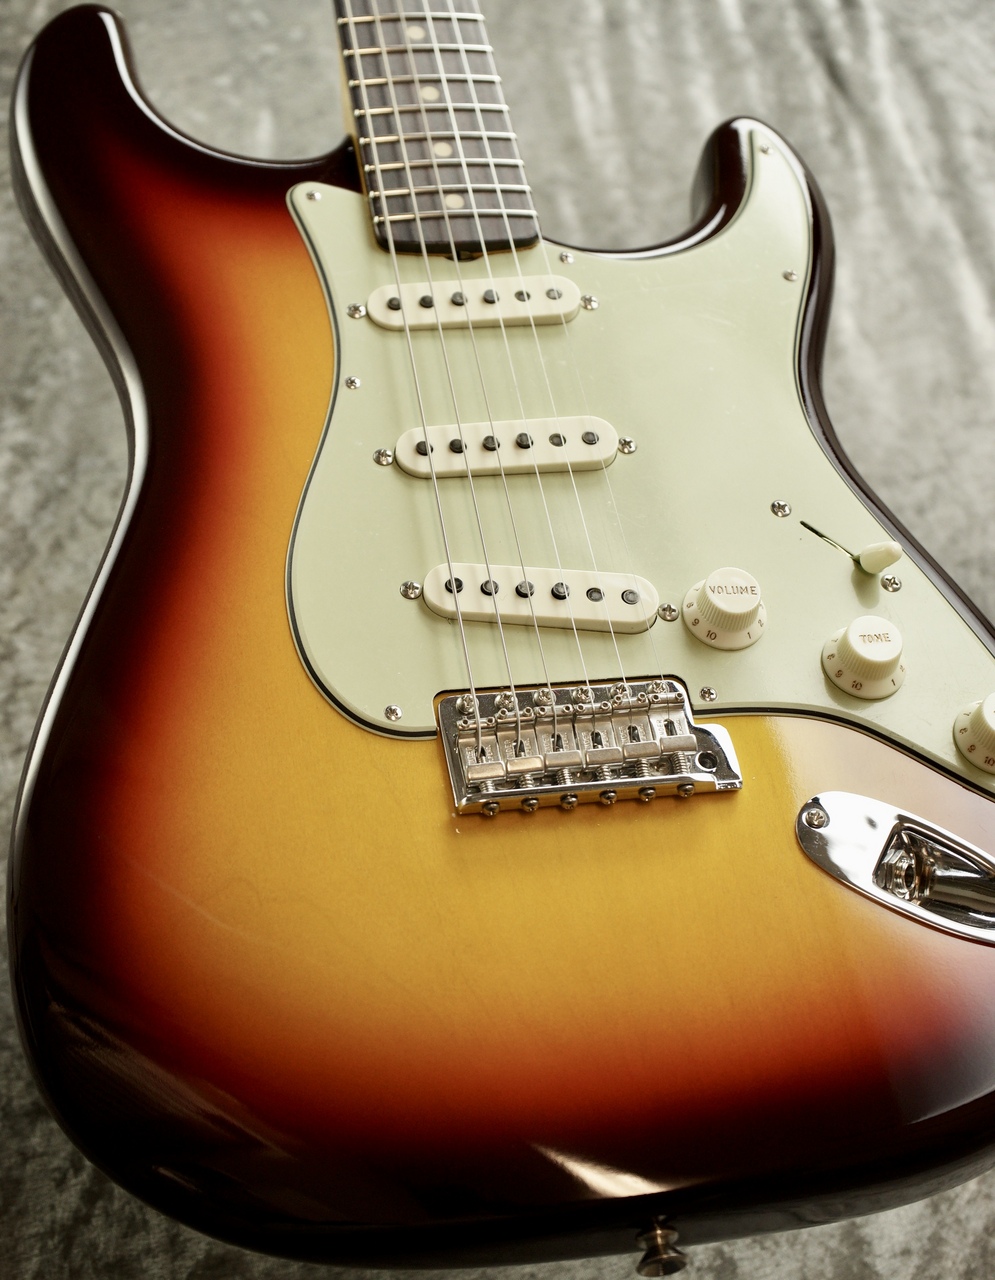 Fender custom shop Stratocaster 保証書付き www.krzysztofbialy.com